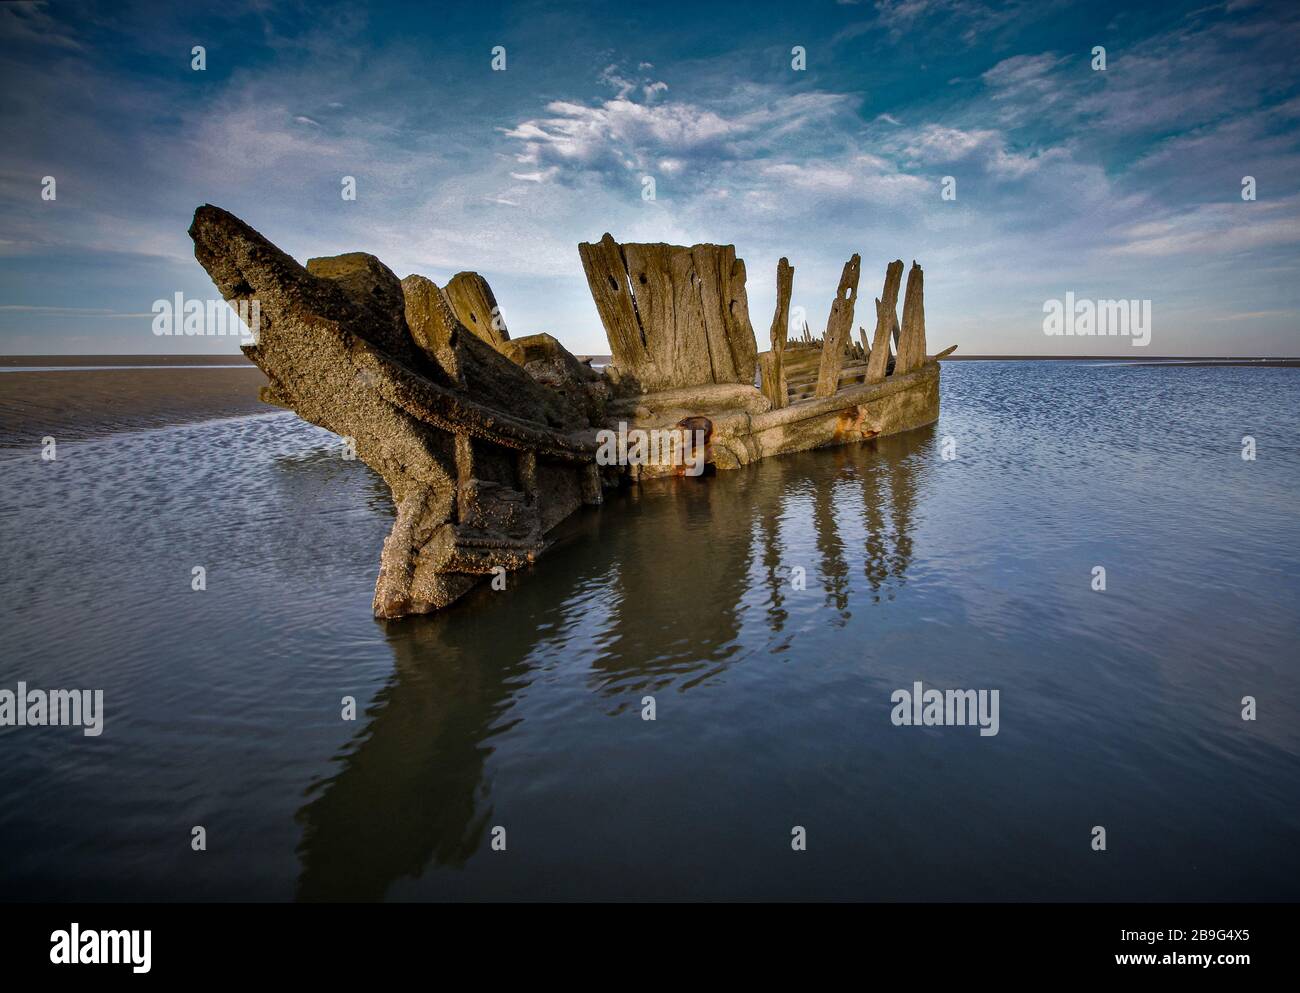 Un naufragio di legno sulla costa di Sefton occasionalmente si affaccia dalla sabbia Foto Stock